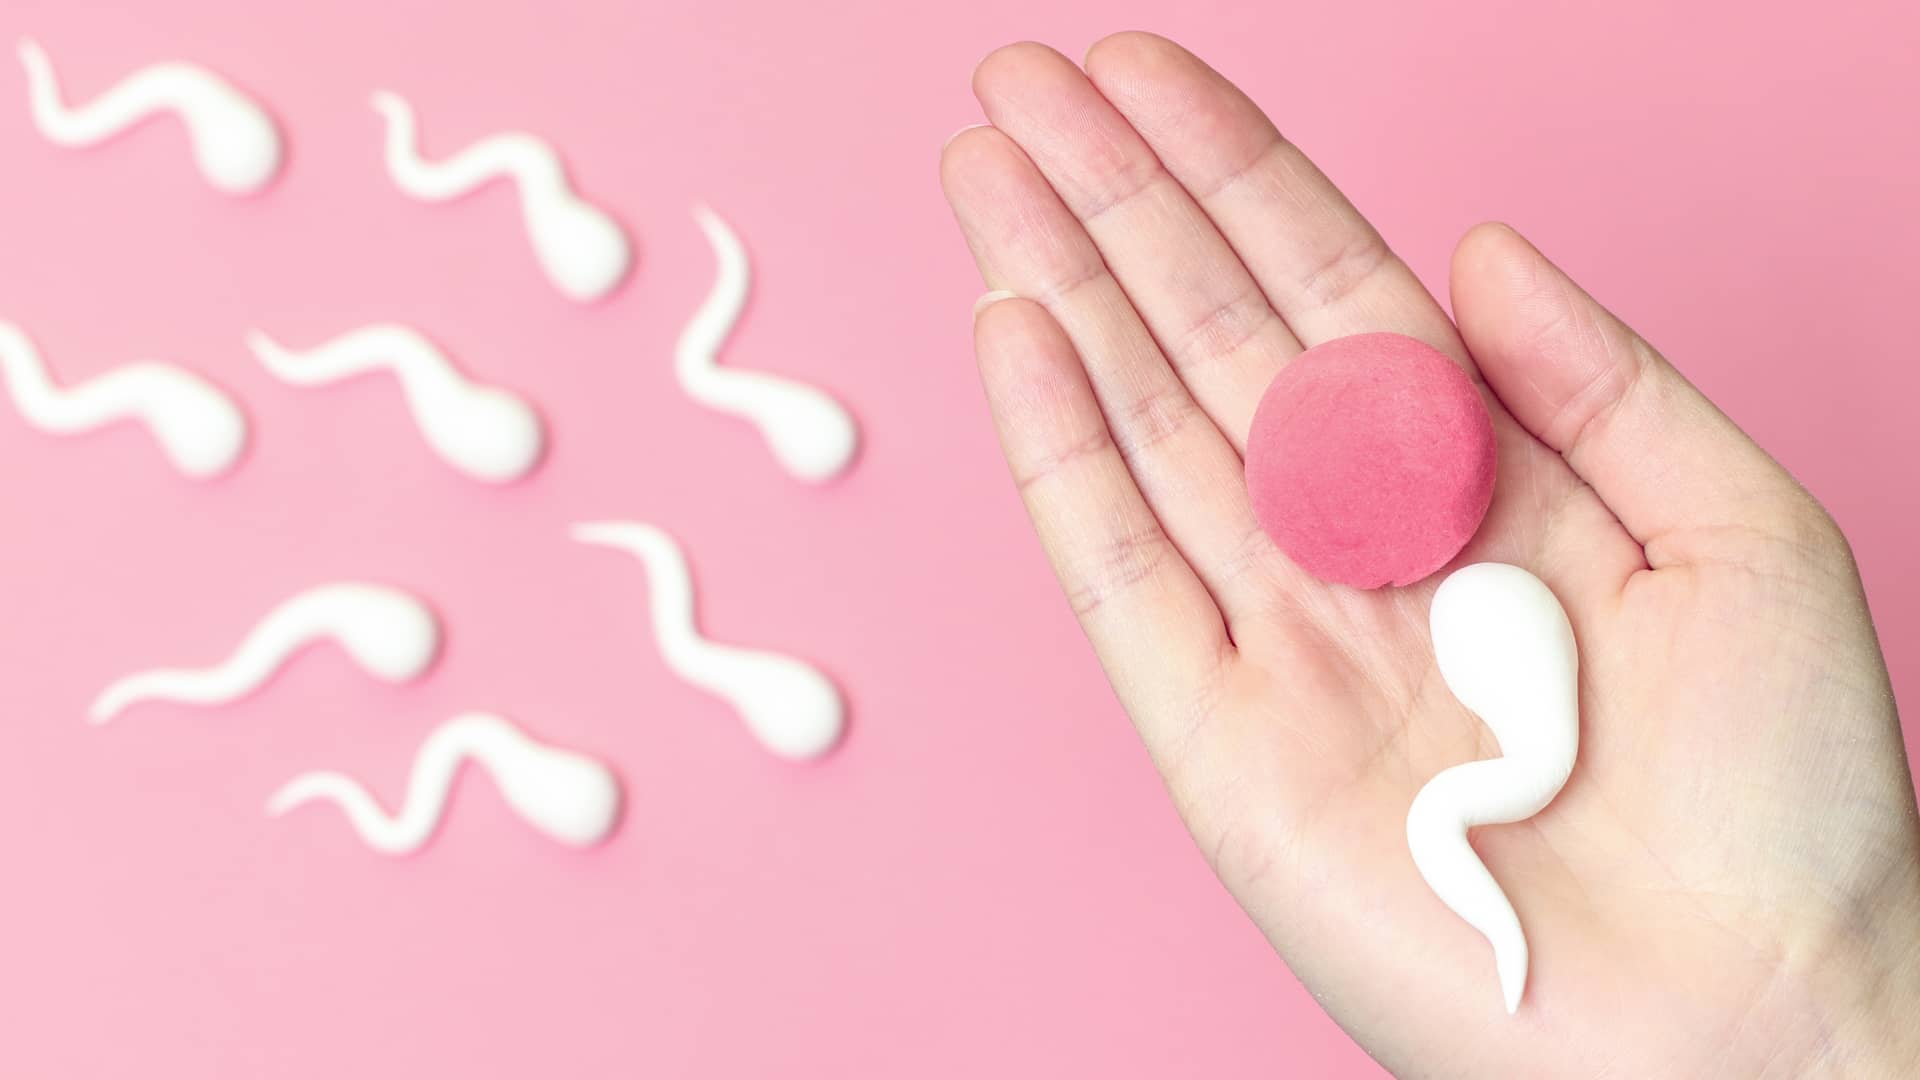 Una mano sujetando unos supuestos ovulo y espermatozoide para representar los requisitos de la inseminación aritificial